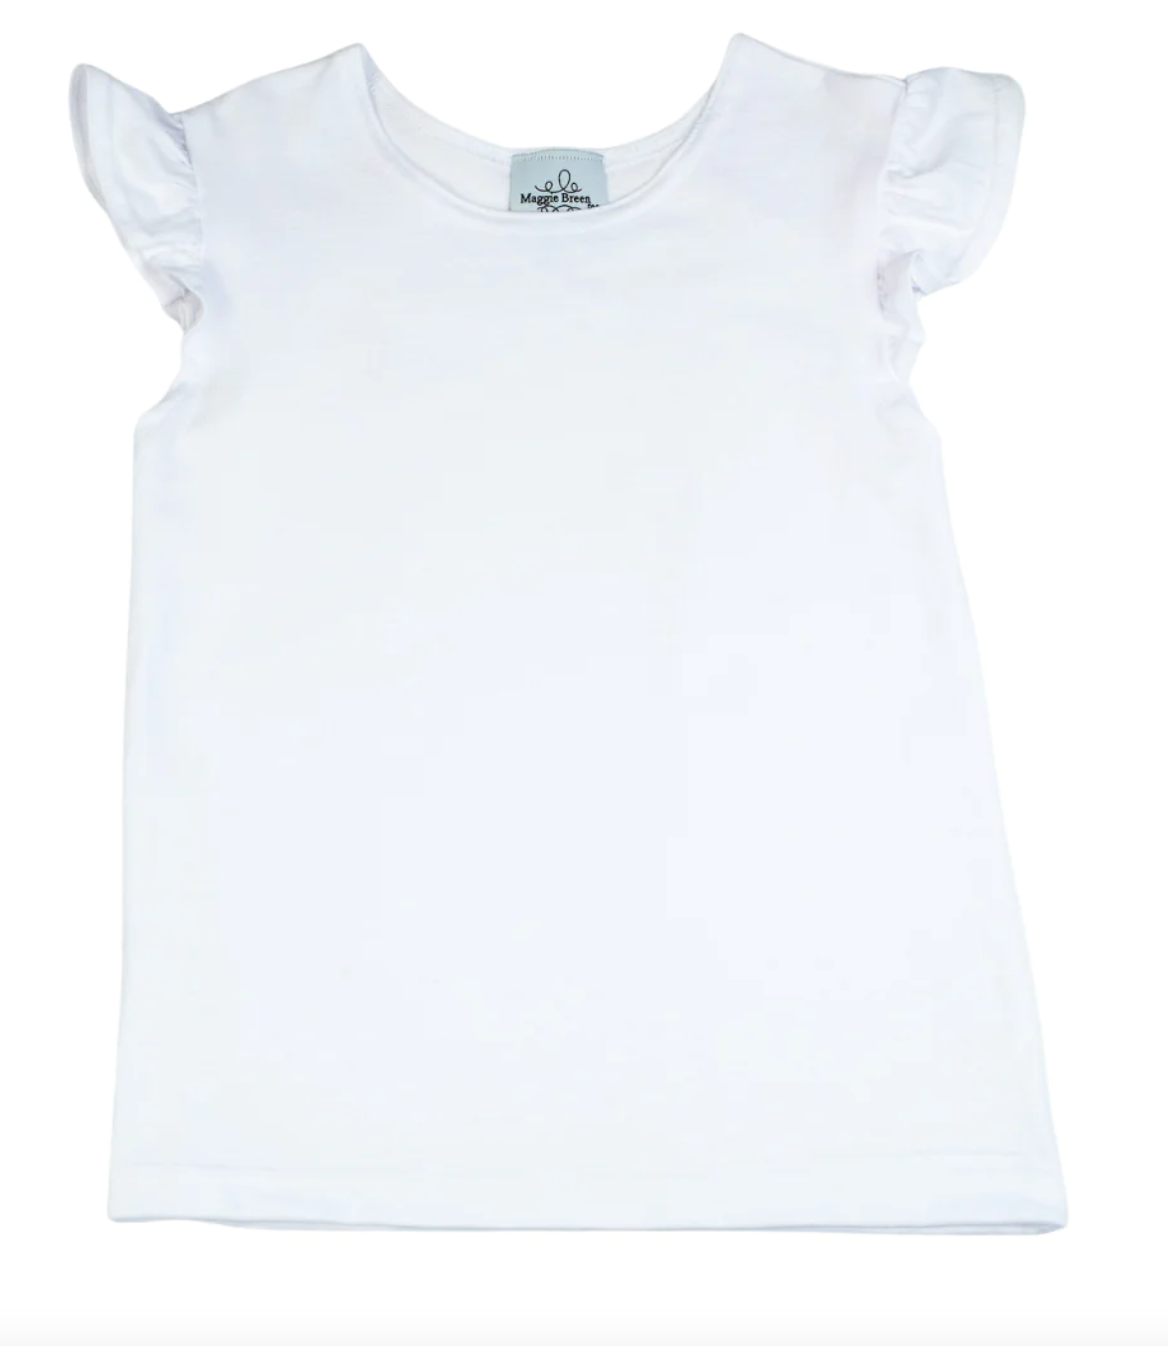 Funtasia Too - Tee Shirt with Angel Sleeve - White